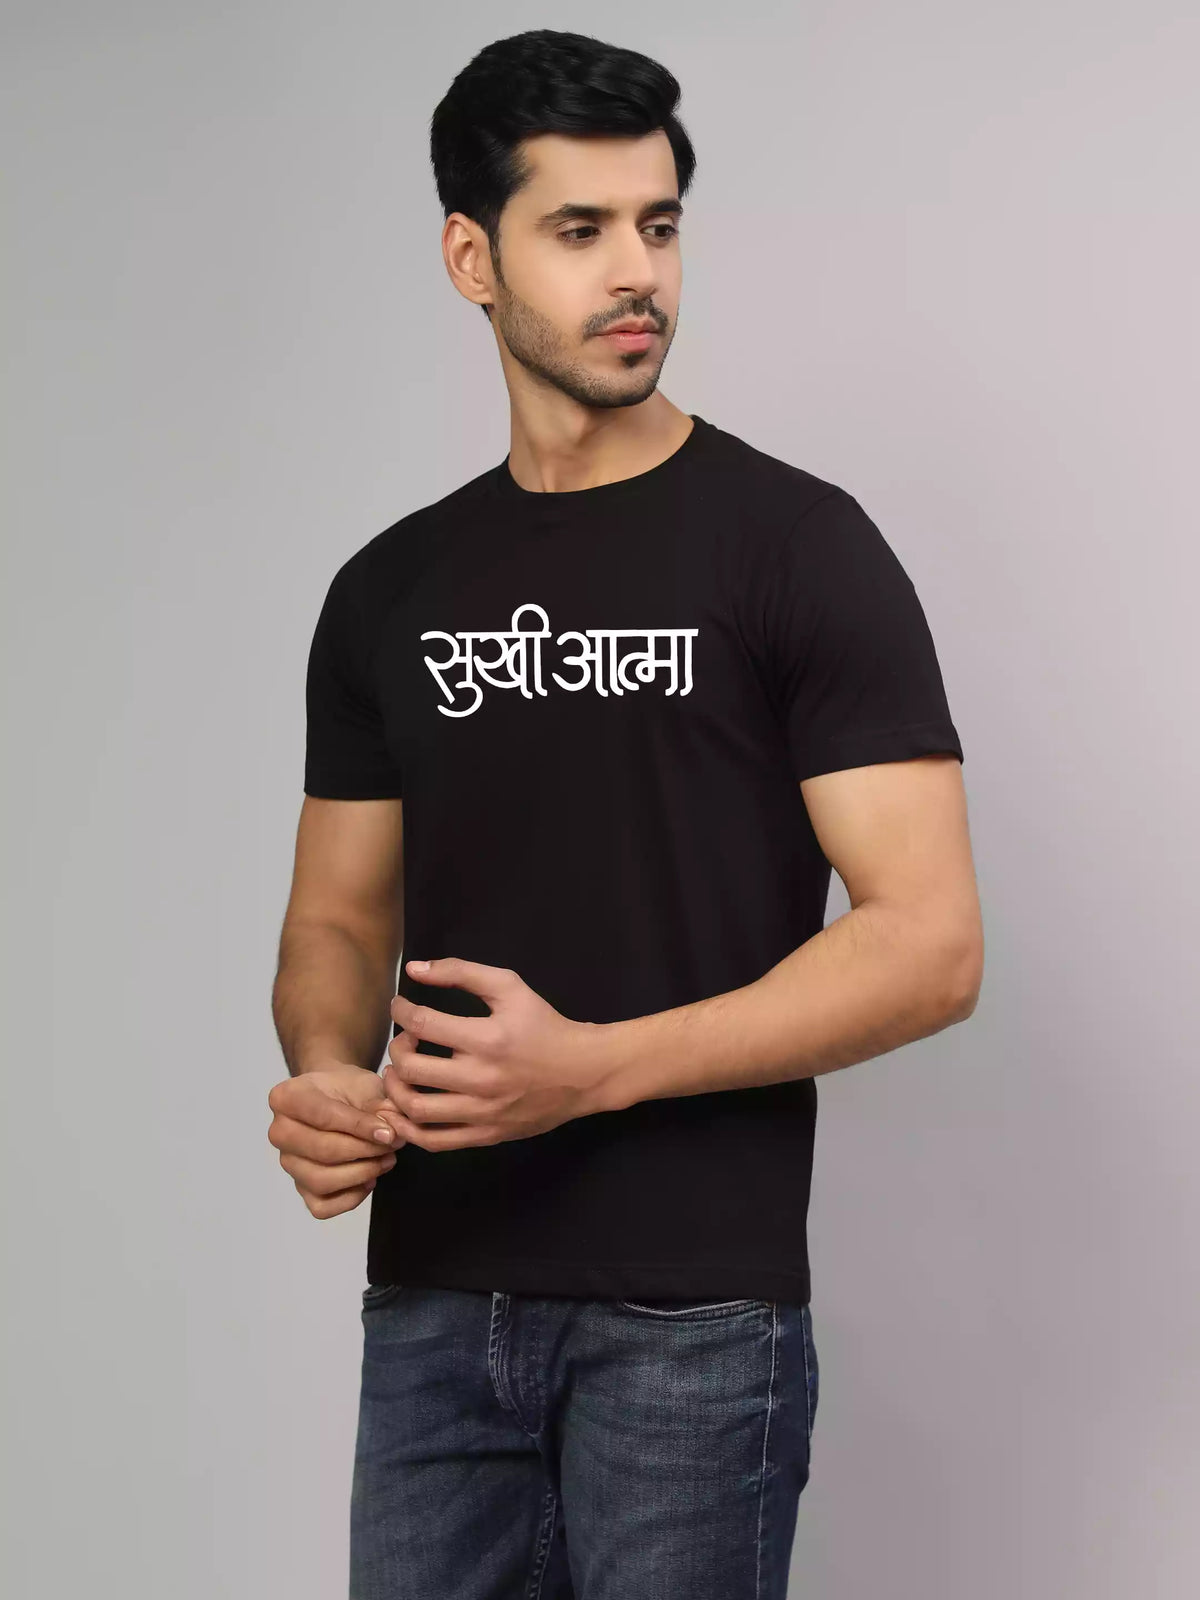 Sukhiaatma - Sukhiaatma Unisex Graphic Printed Black plus size T-shirt